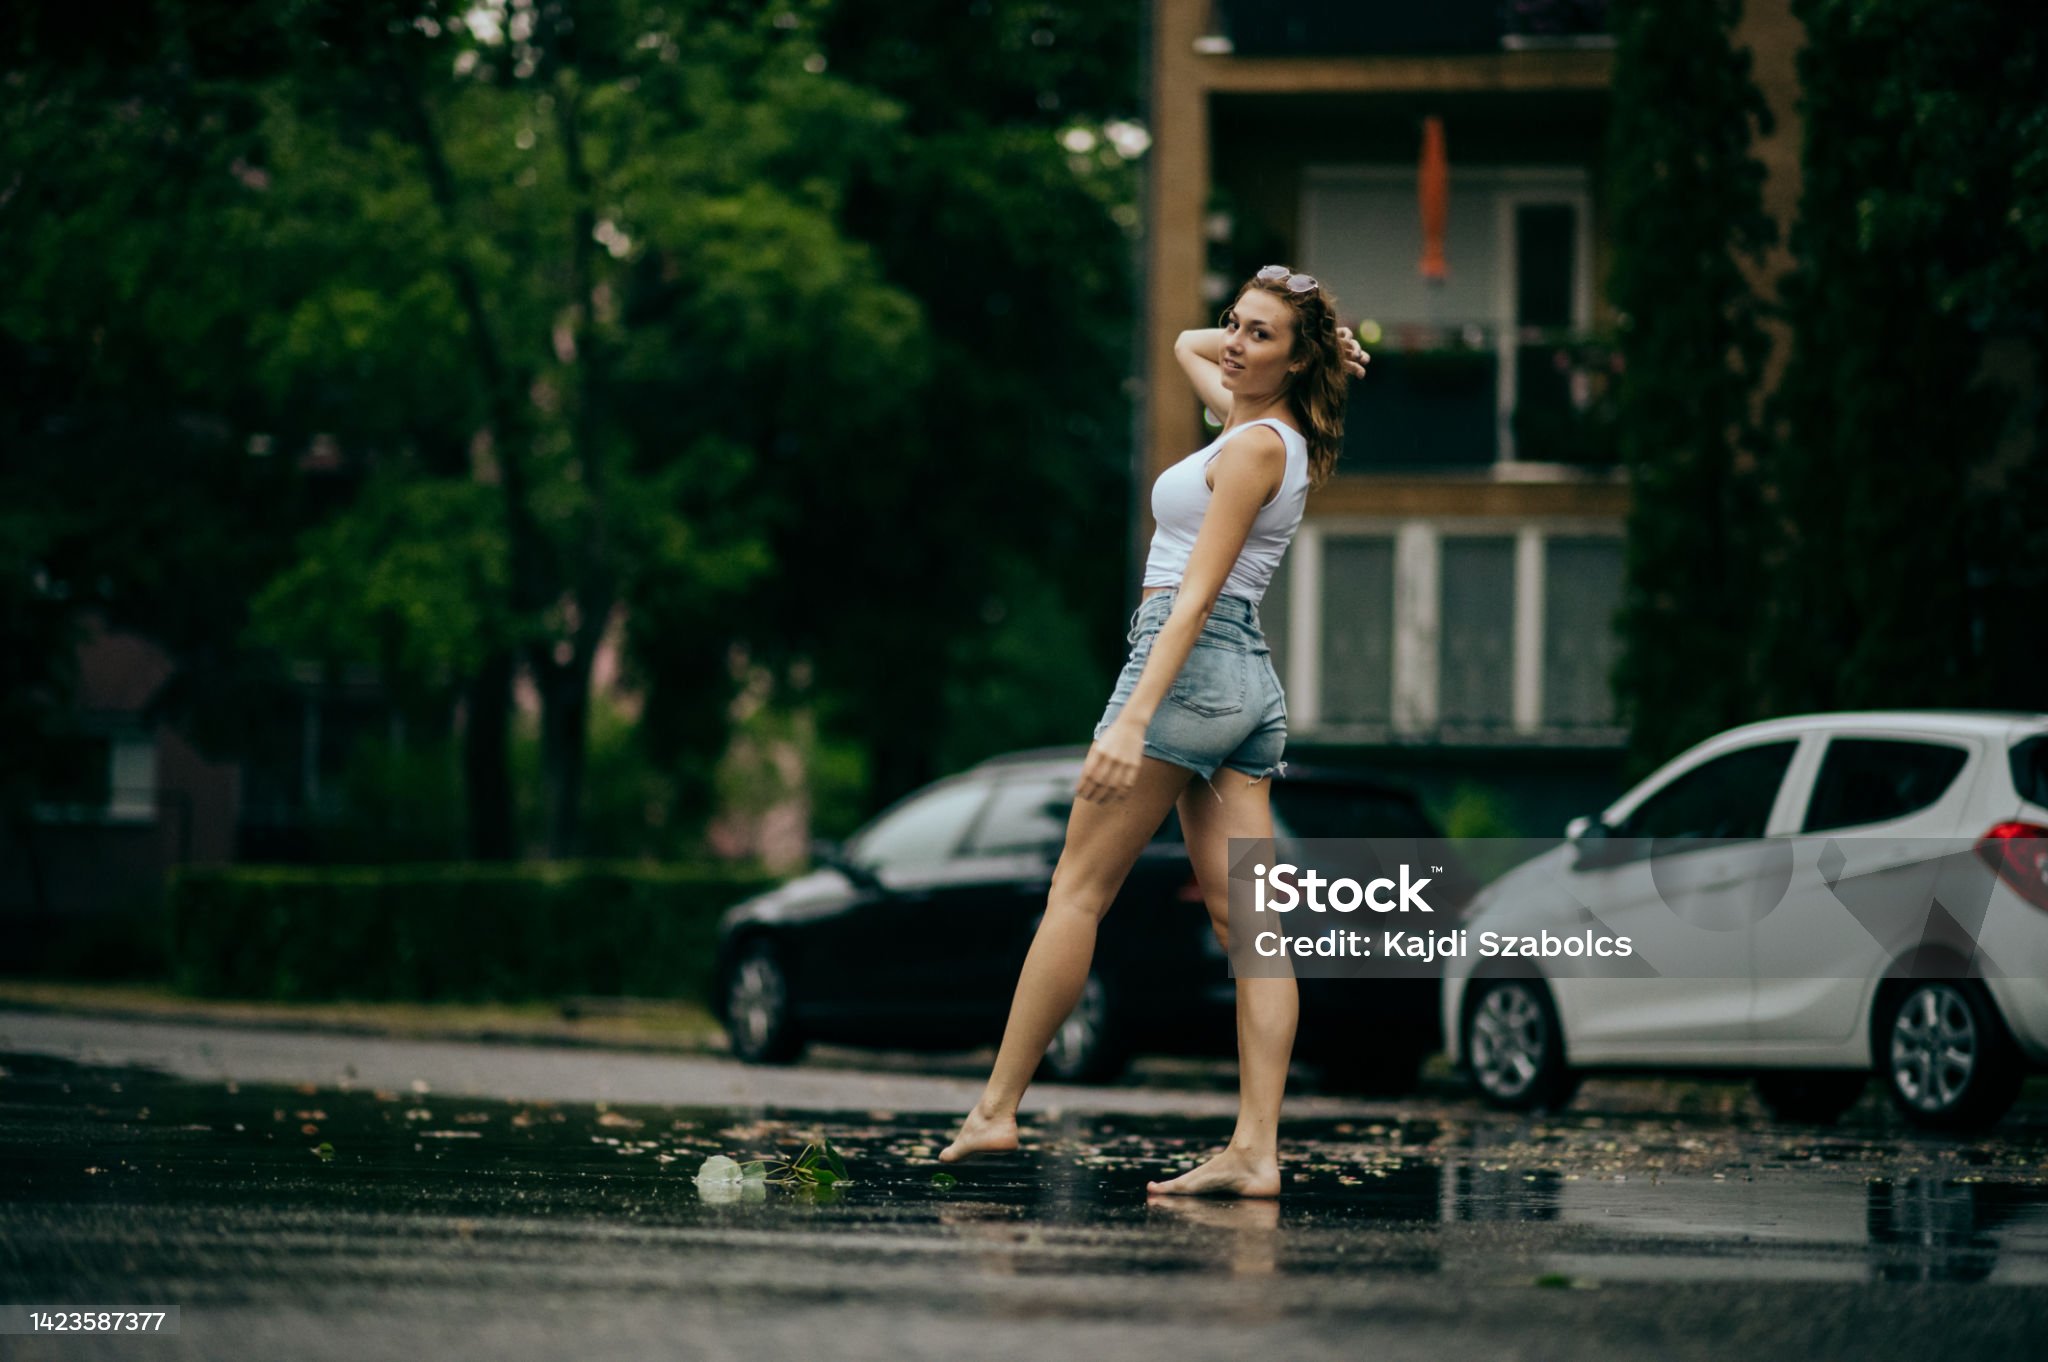 https://media.istockphoto.com/id/1423587377/photo/young-woman-on-steps-in-rain.jpg?s=2048x2048&amp;w=is&amp;k=20&amp;c=FpuN1Avhzp6LghKZDYrKM4woXtYElFMgcCC3-n8NPvI=